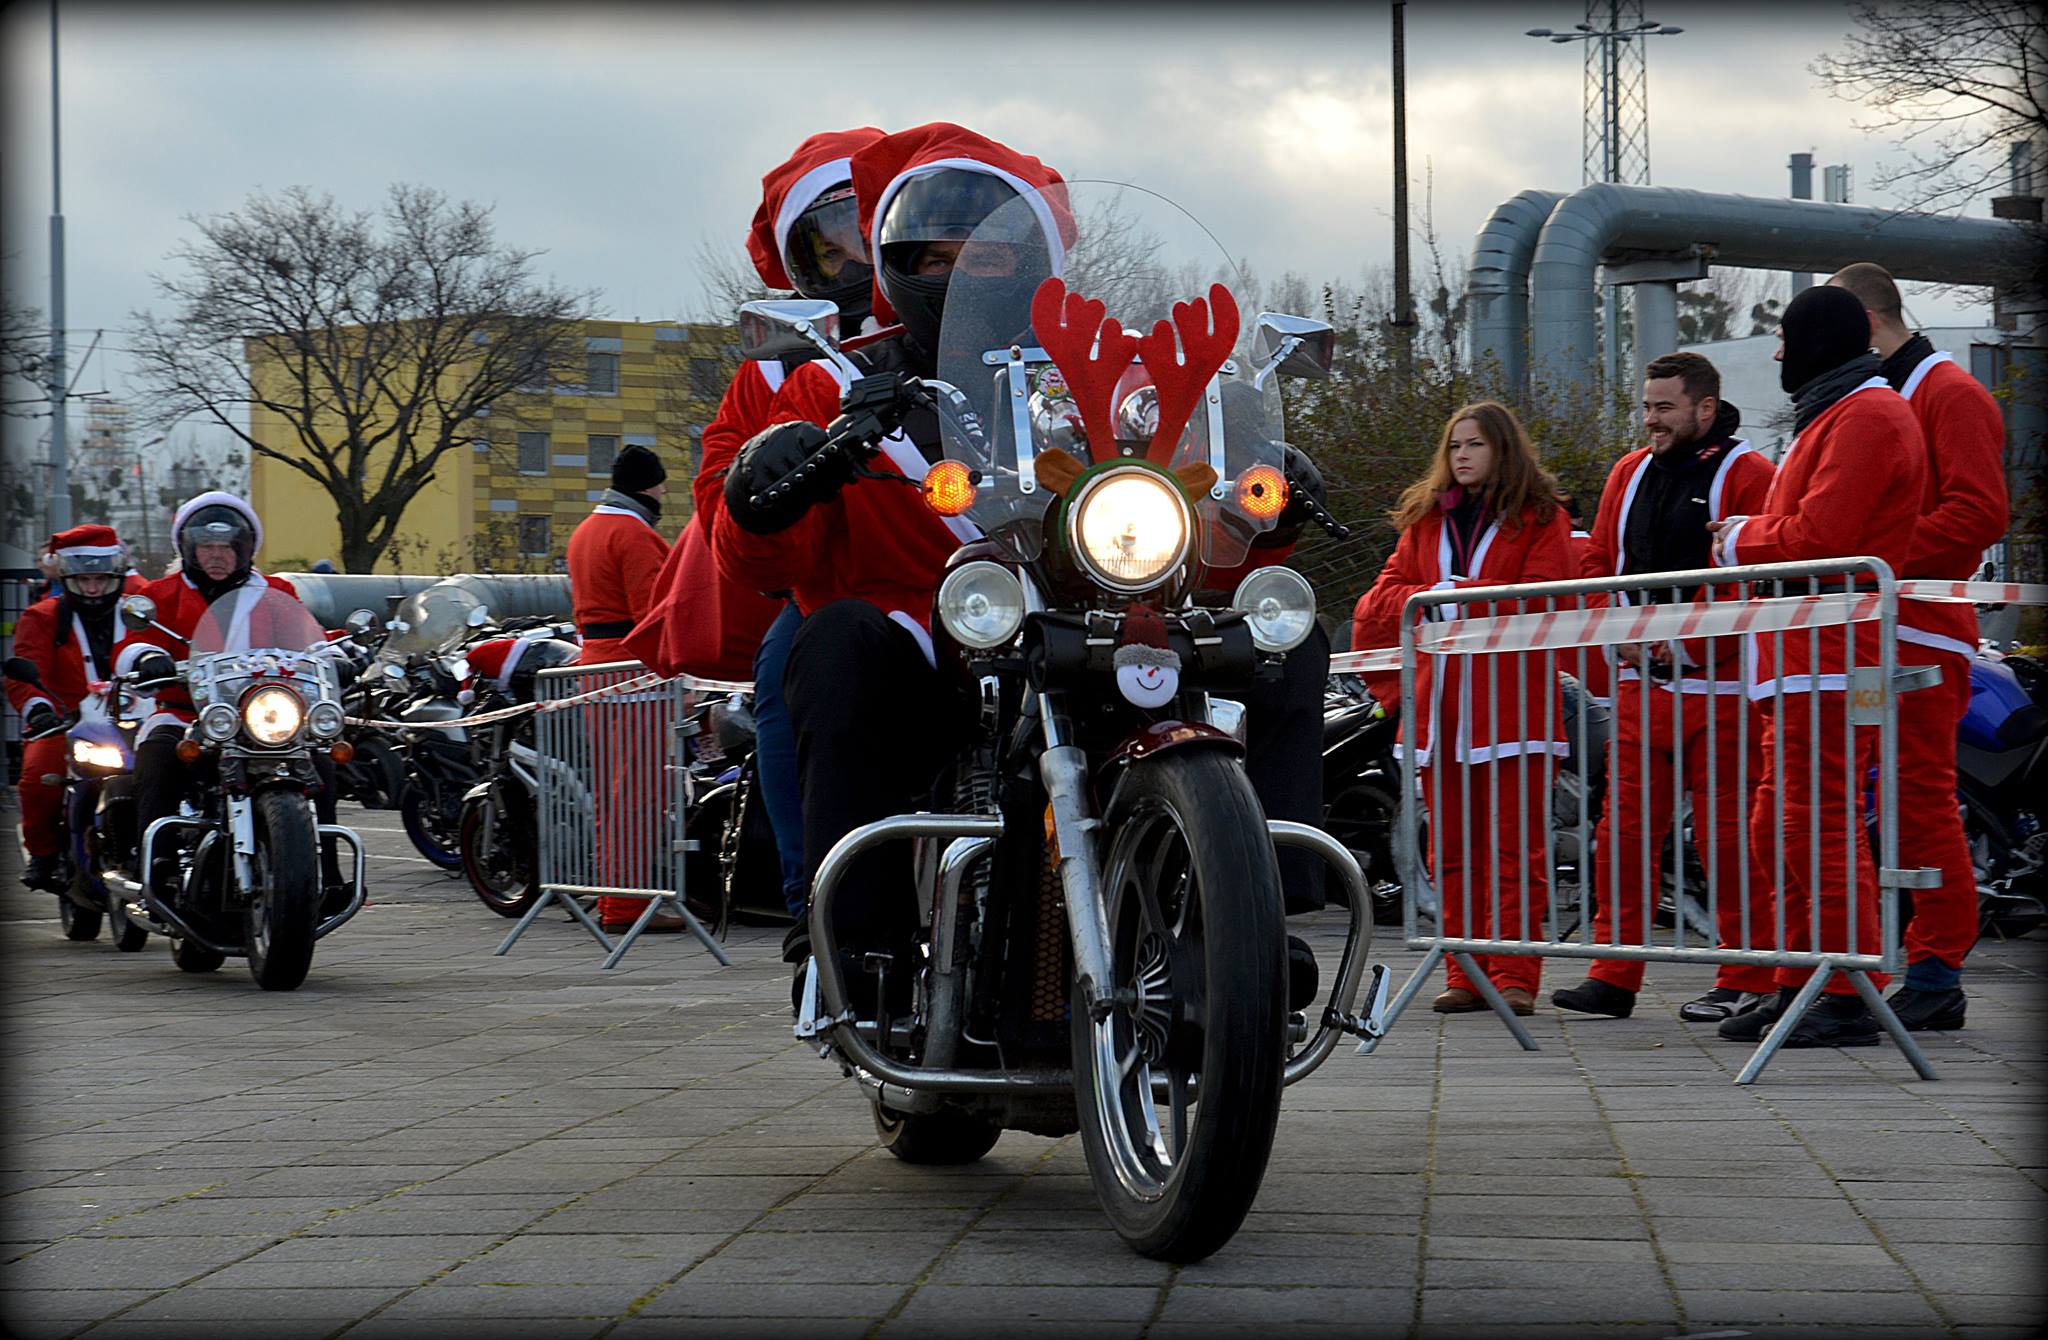 Mikołaje na motocyklach przejadą ulicami Trójmiasta po raz 20. Zbiorą pieniądze na obiady i rozdadzą paczki